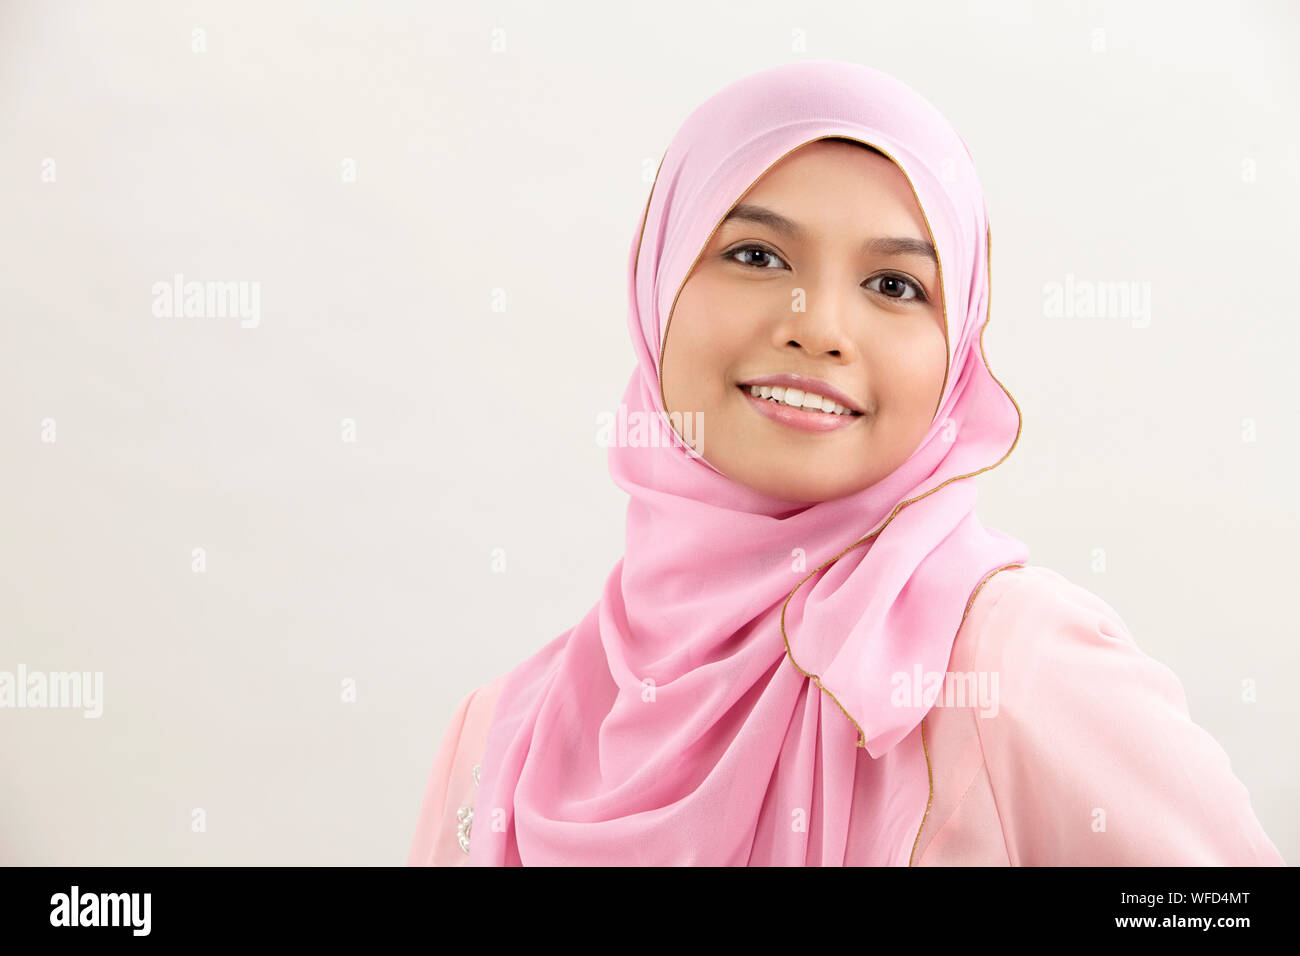 Happy malay woman with tudung looking at camera Stock Photo